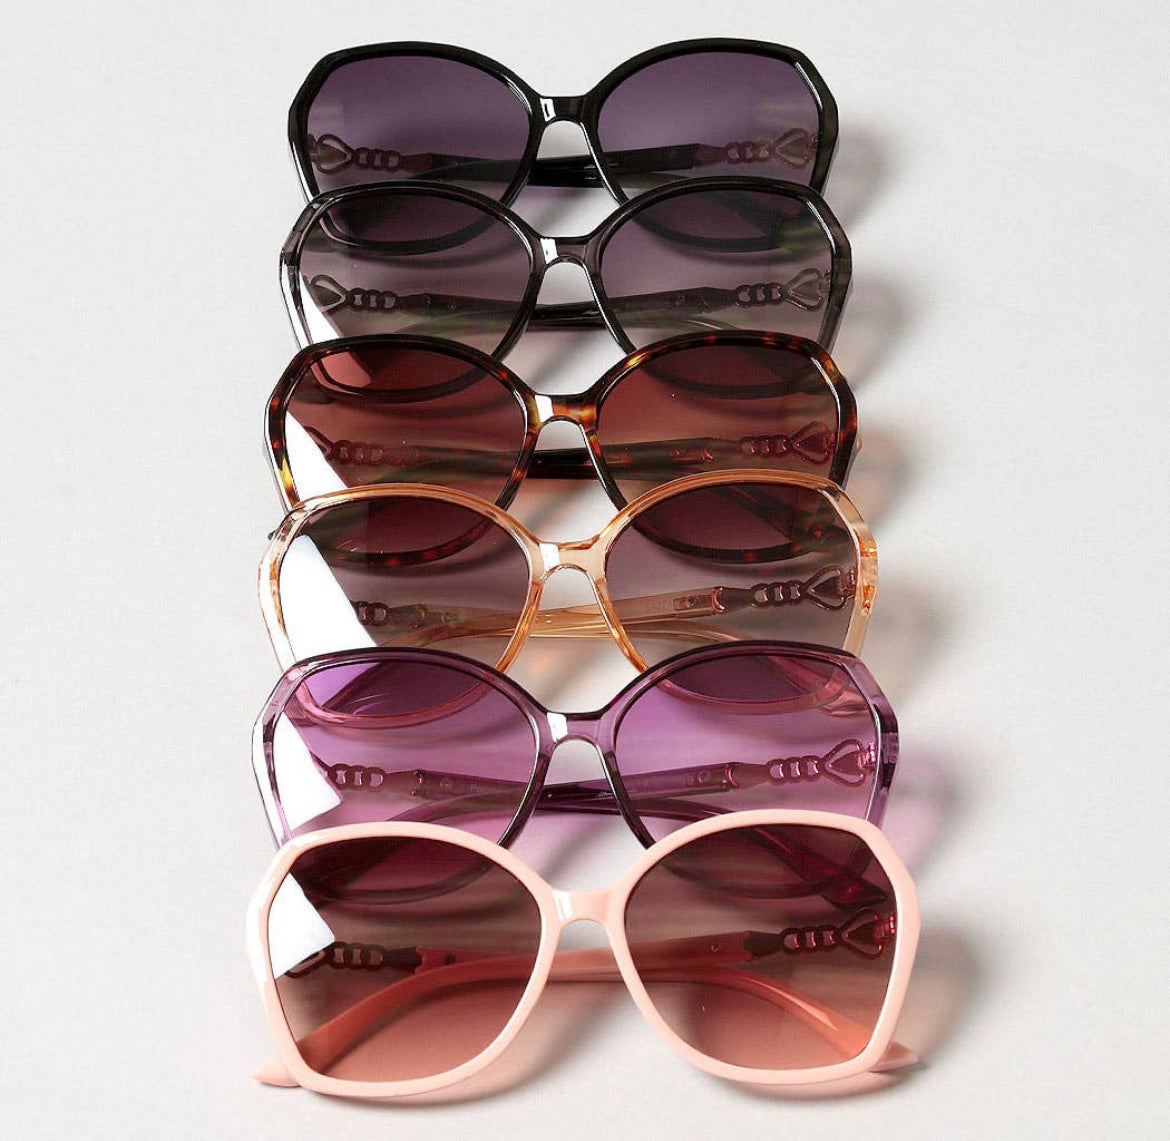 Oversized Round Frame Sunglasses